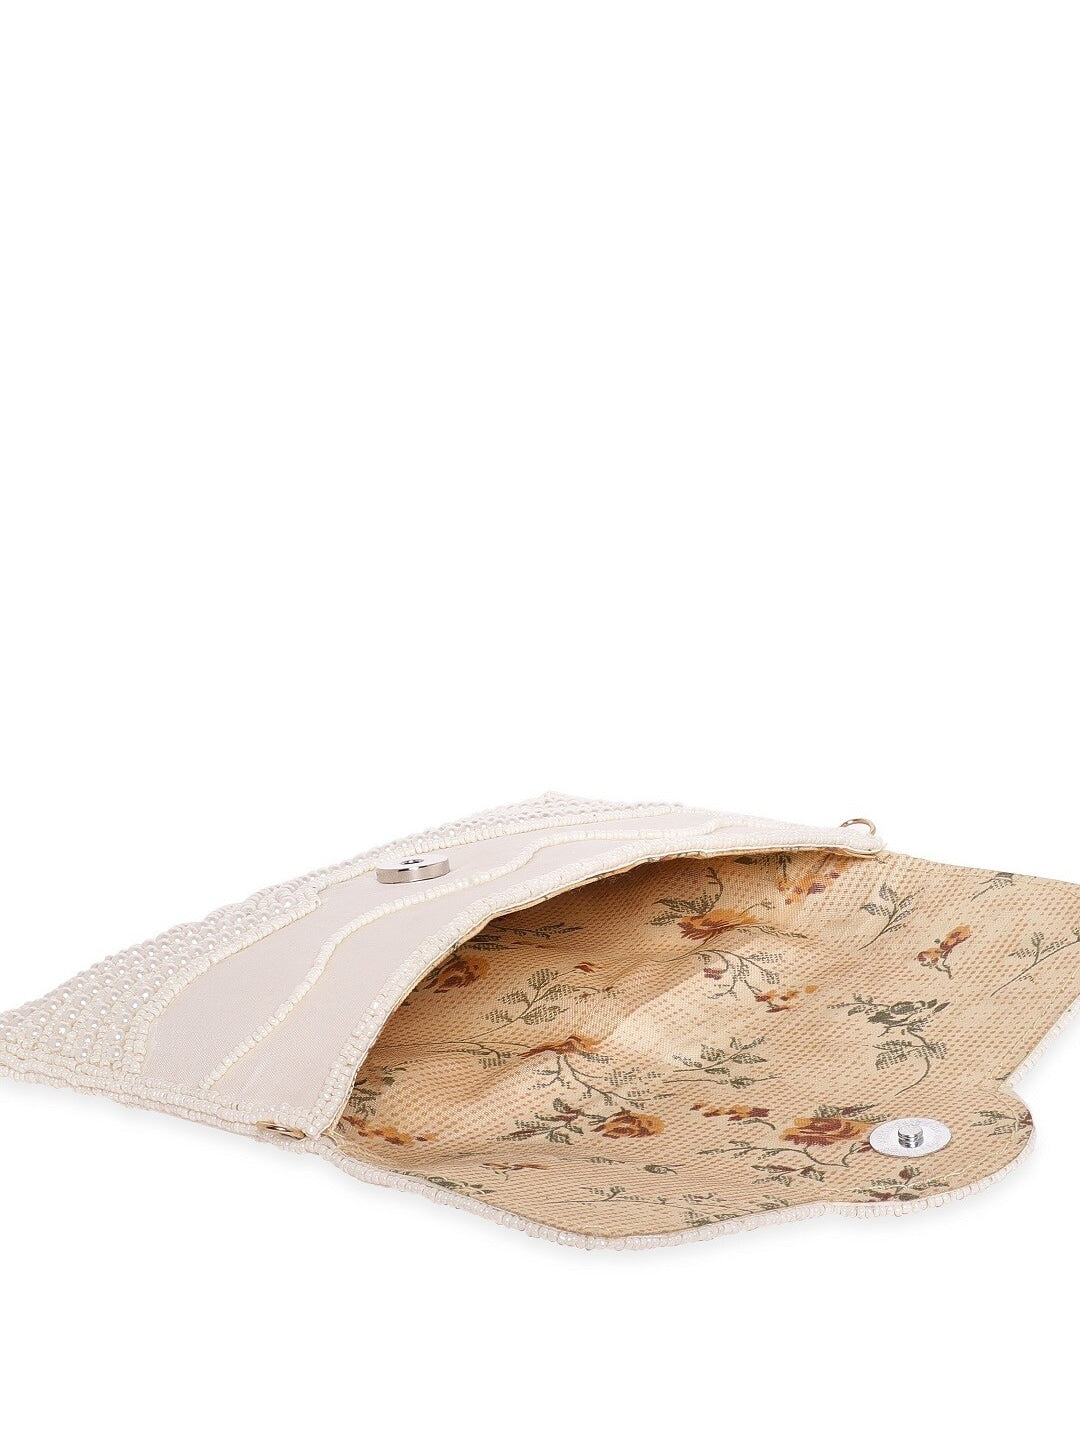 Rubans Embellished Envelope Clutch - Distacart